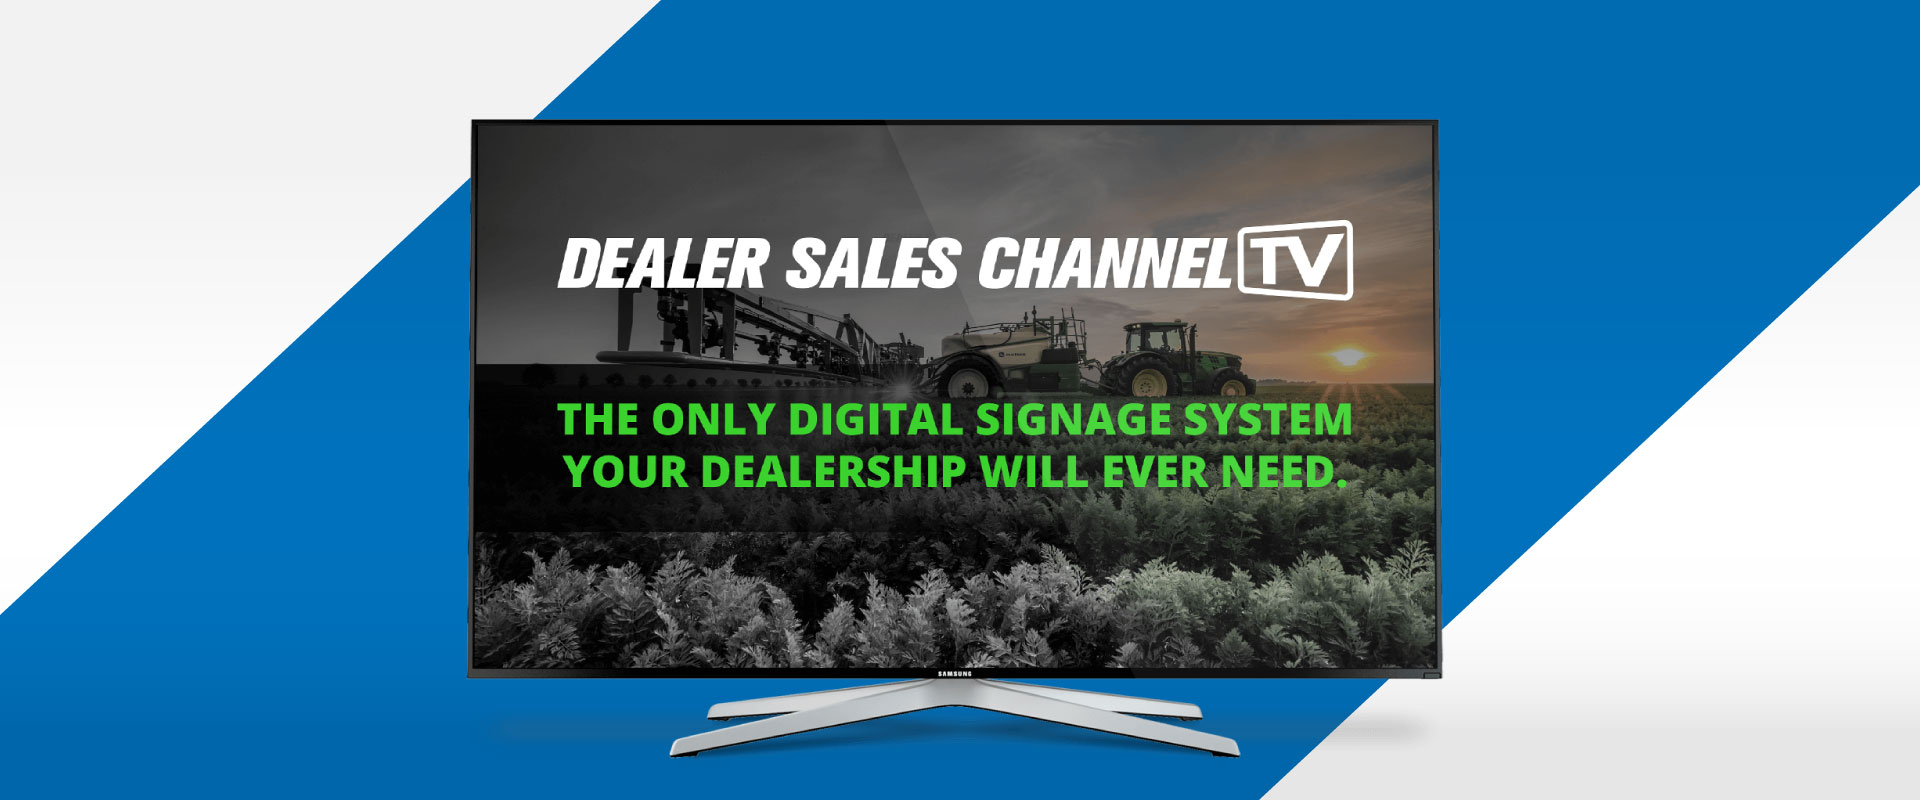 Dealer Sales Channel